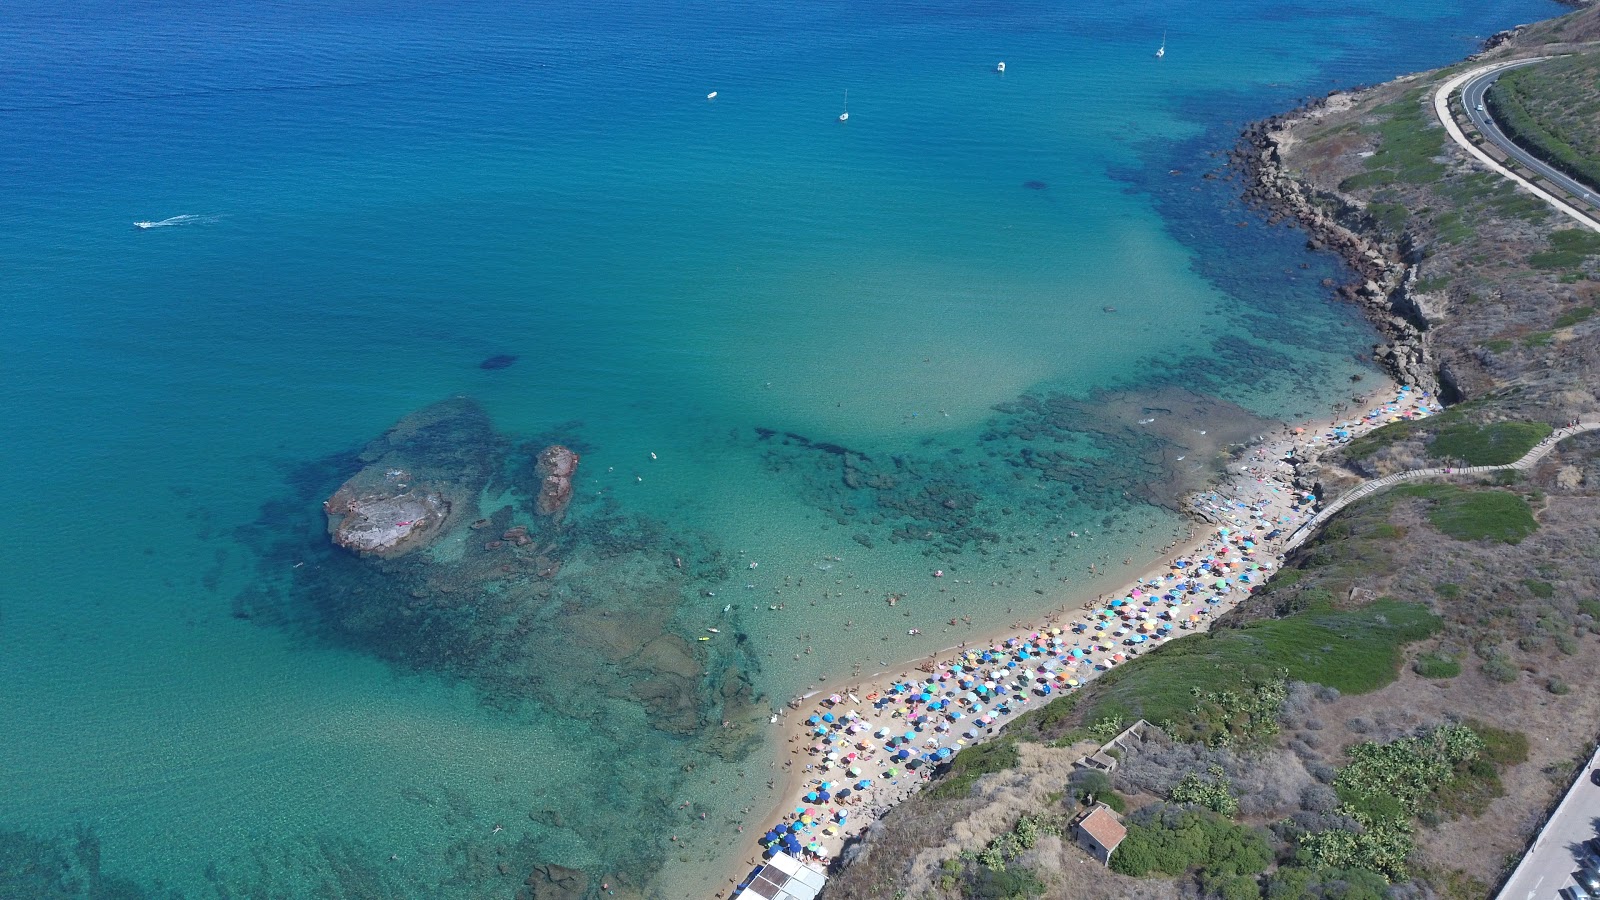 Zdjęcie Spiaggia di Ampurias z powierzchnią turkusowa czysta woda